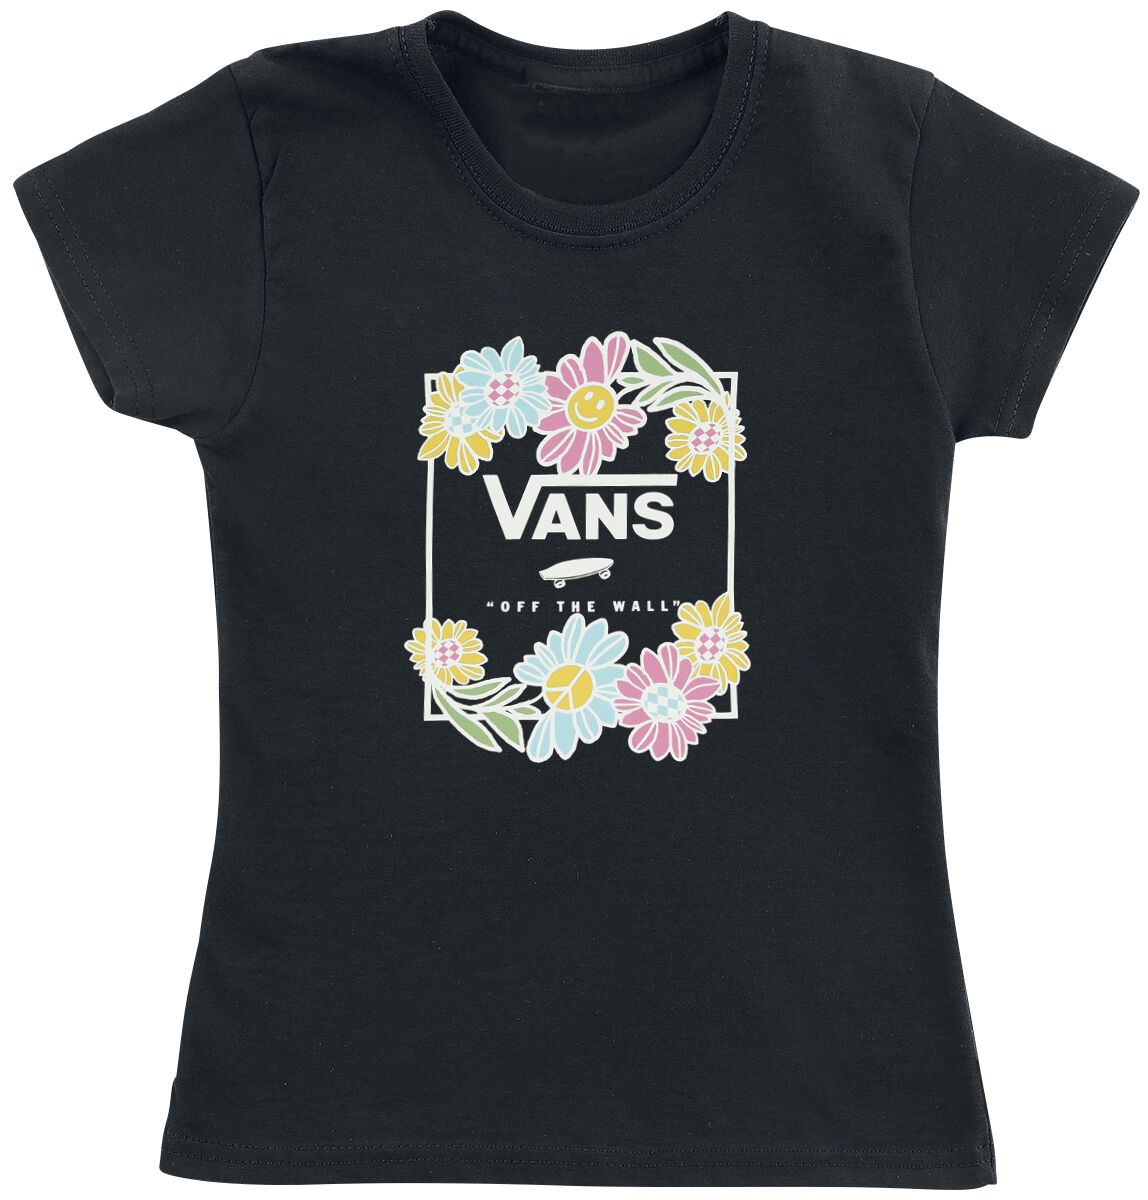 T-Shirt Manches courtes de Vans - Elevated Floral - S à XL - pour Femme - noir